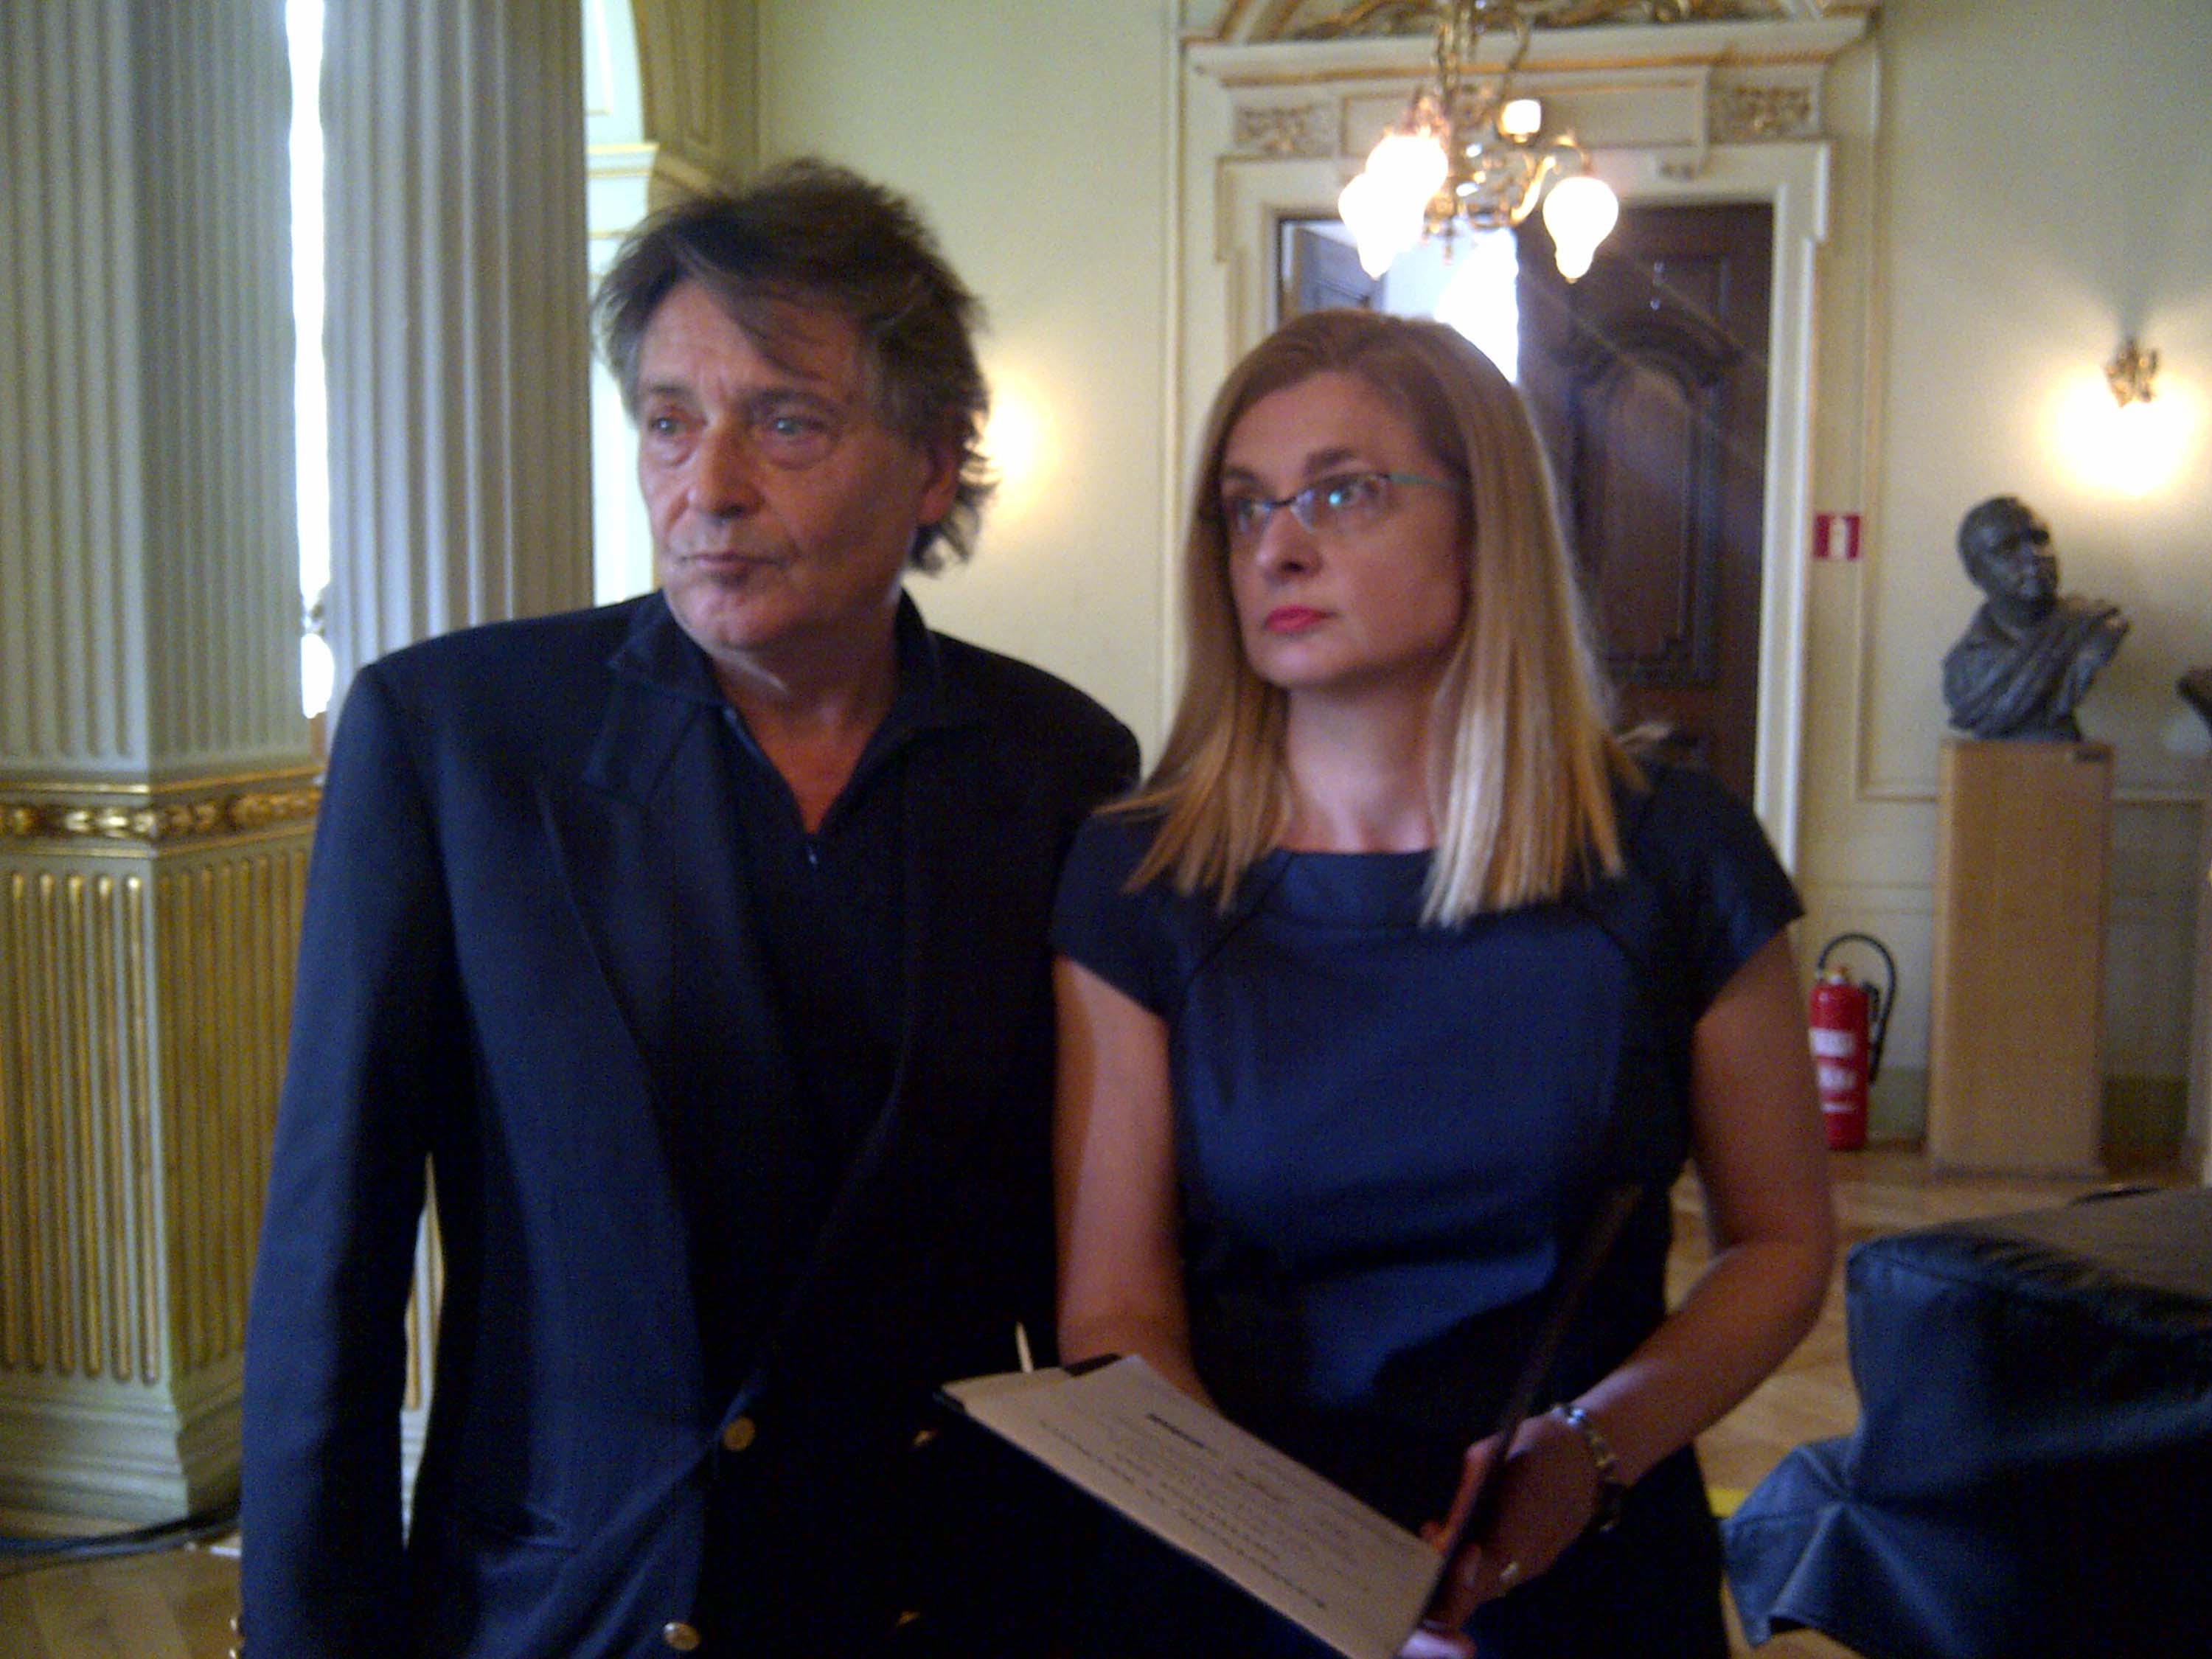 Antonio Devetag (Direttore generale Mittelfest) e Ana Lederer (Direttrice Teatro Nazionale croato) nel foyer del Teatro Nazionale. (Zagabria 16/05/13)